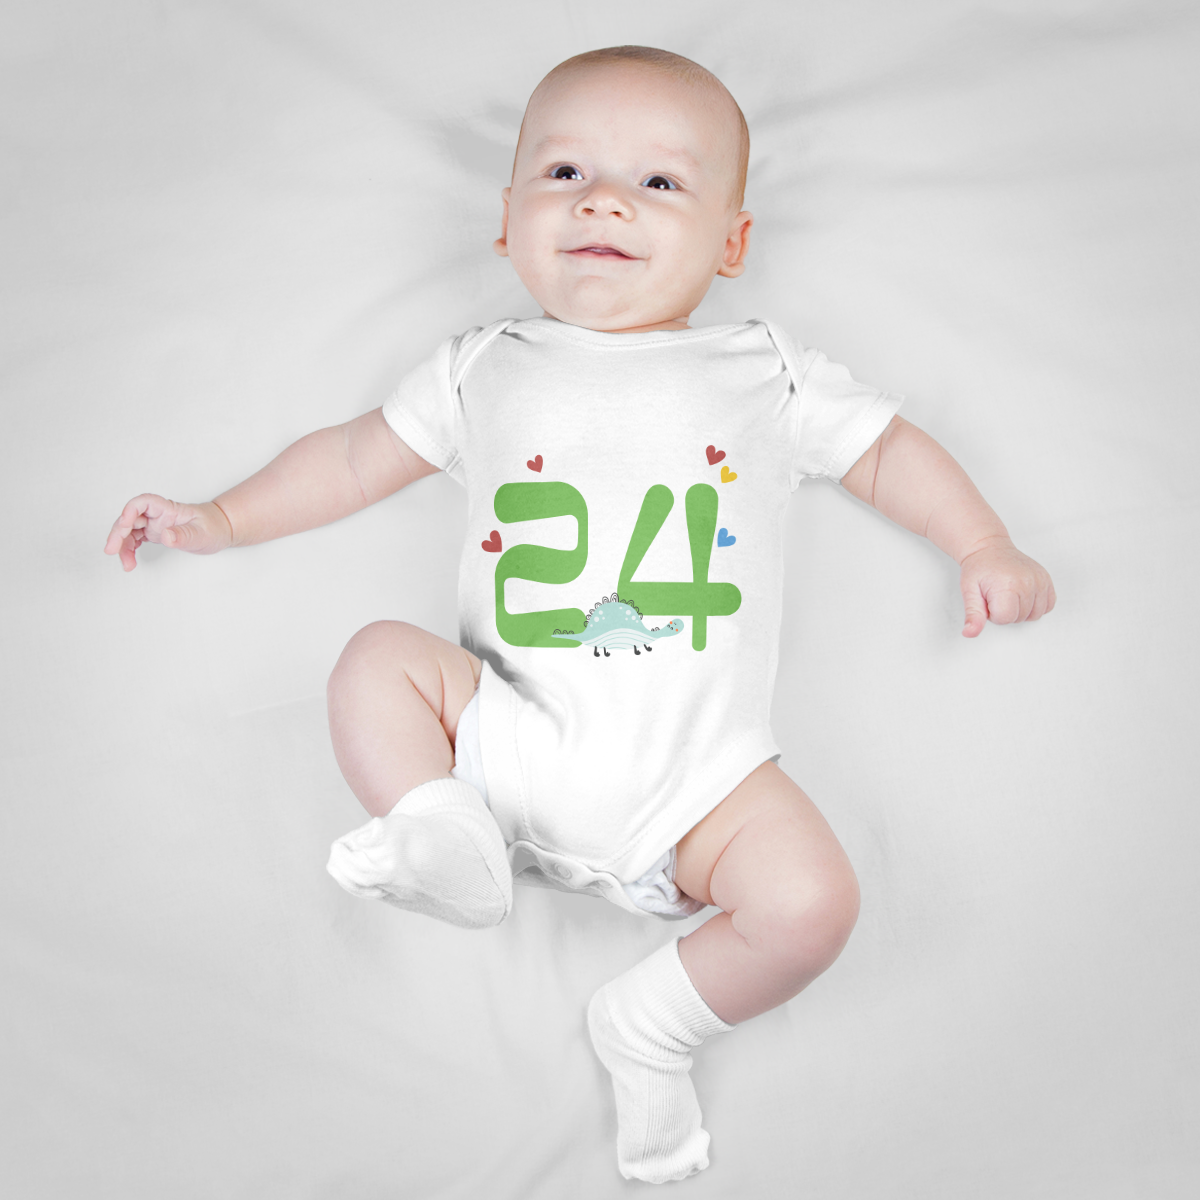 Baby Romper (24 Months)